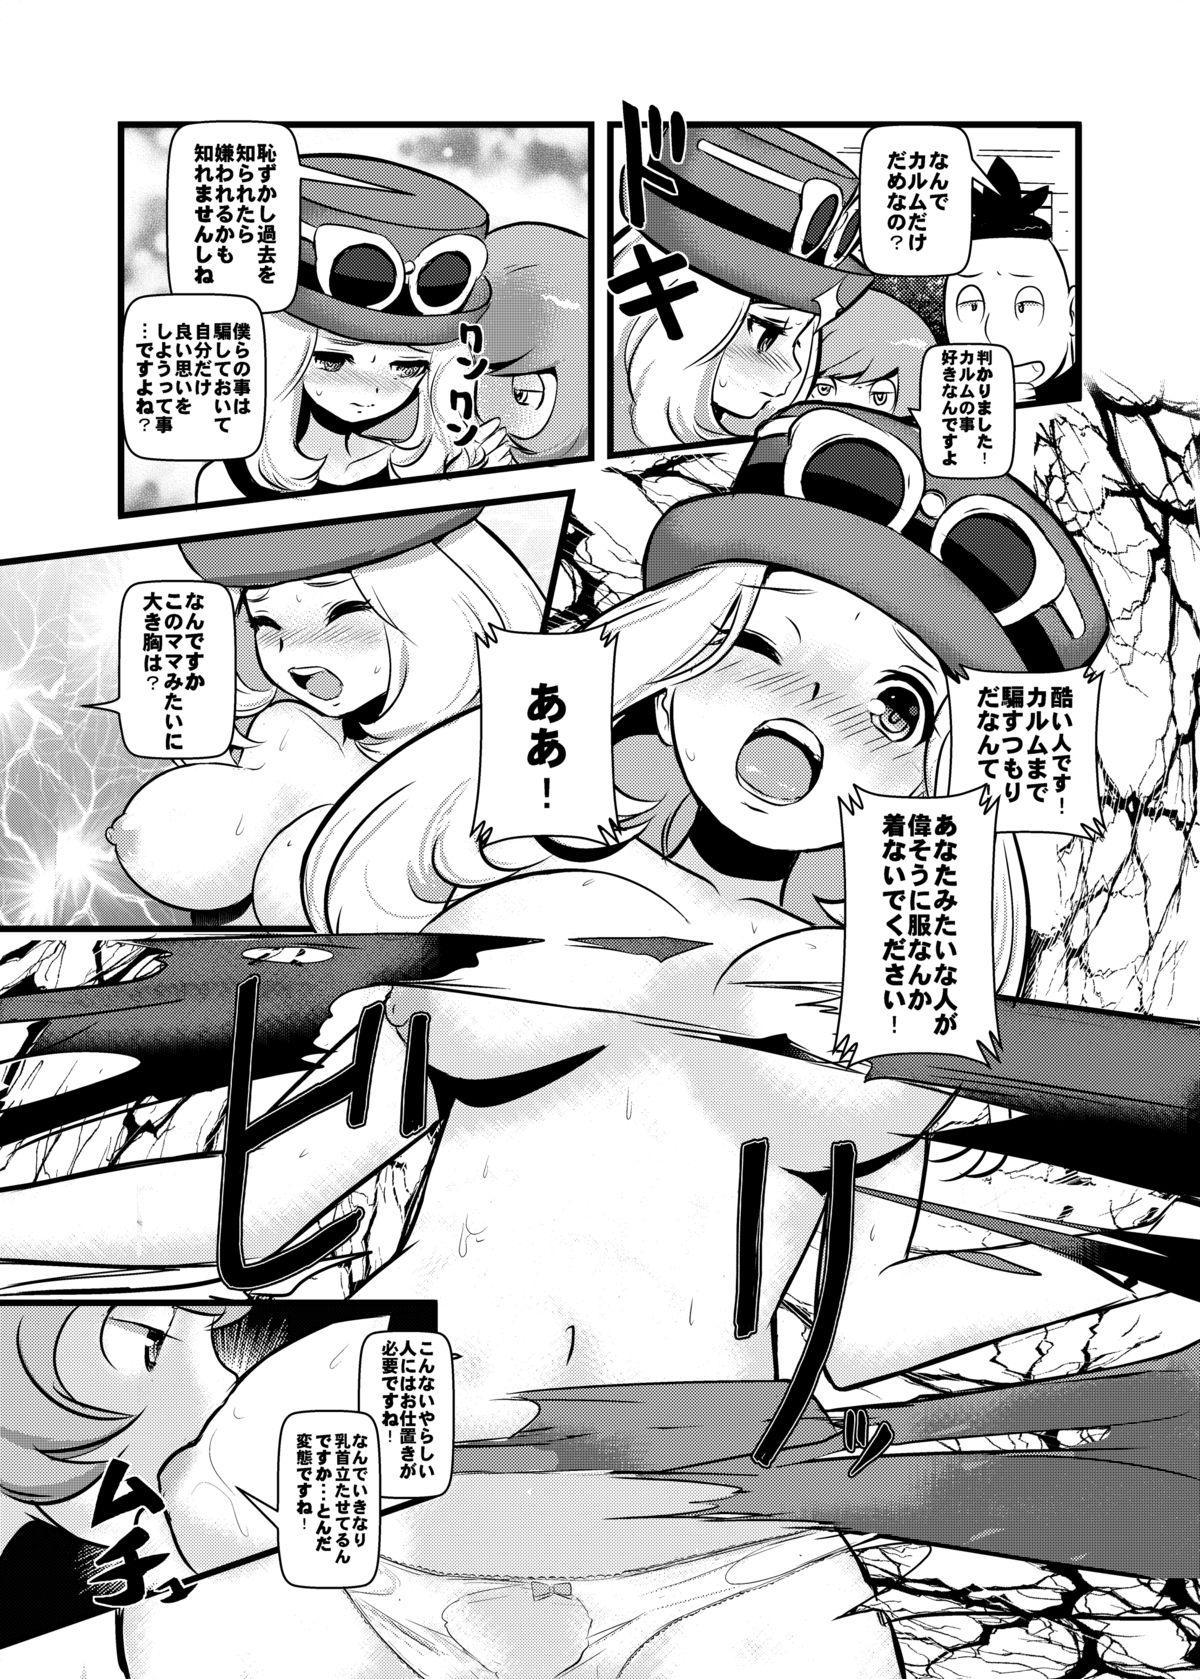 First HAKOIRI MUSUME - Pokemon Lesbians - Page 6